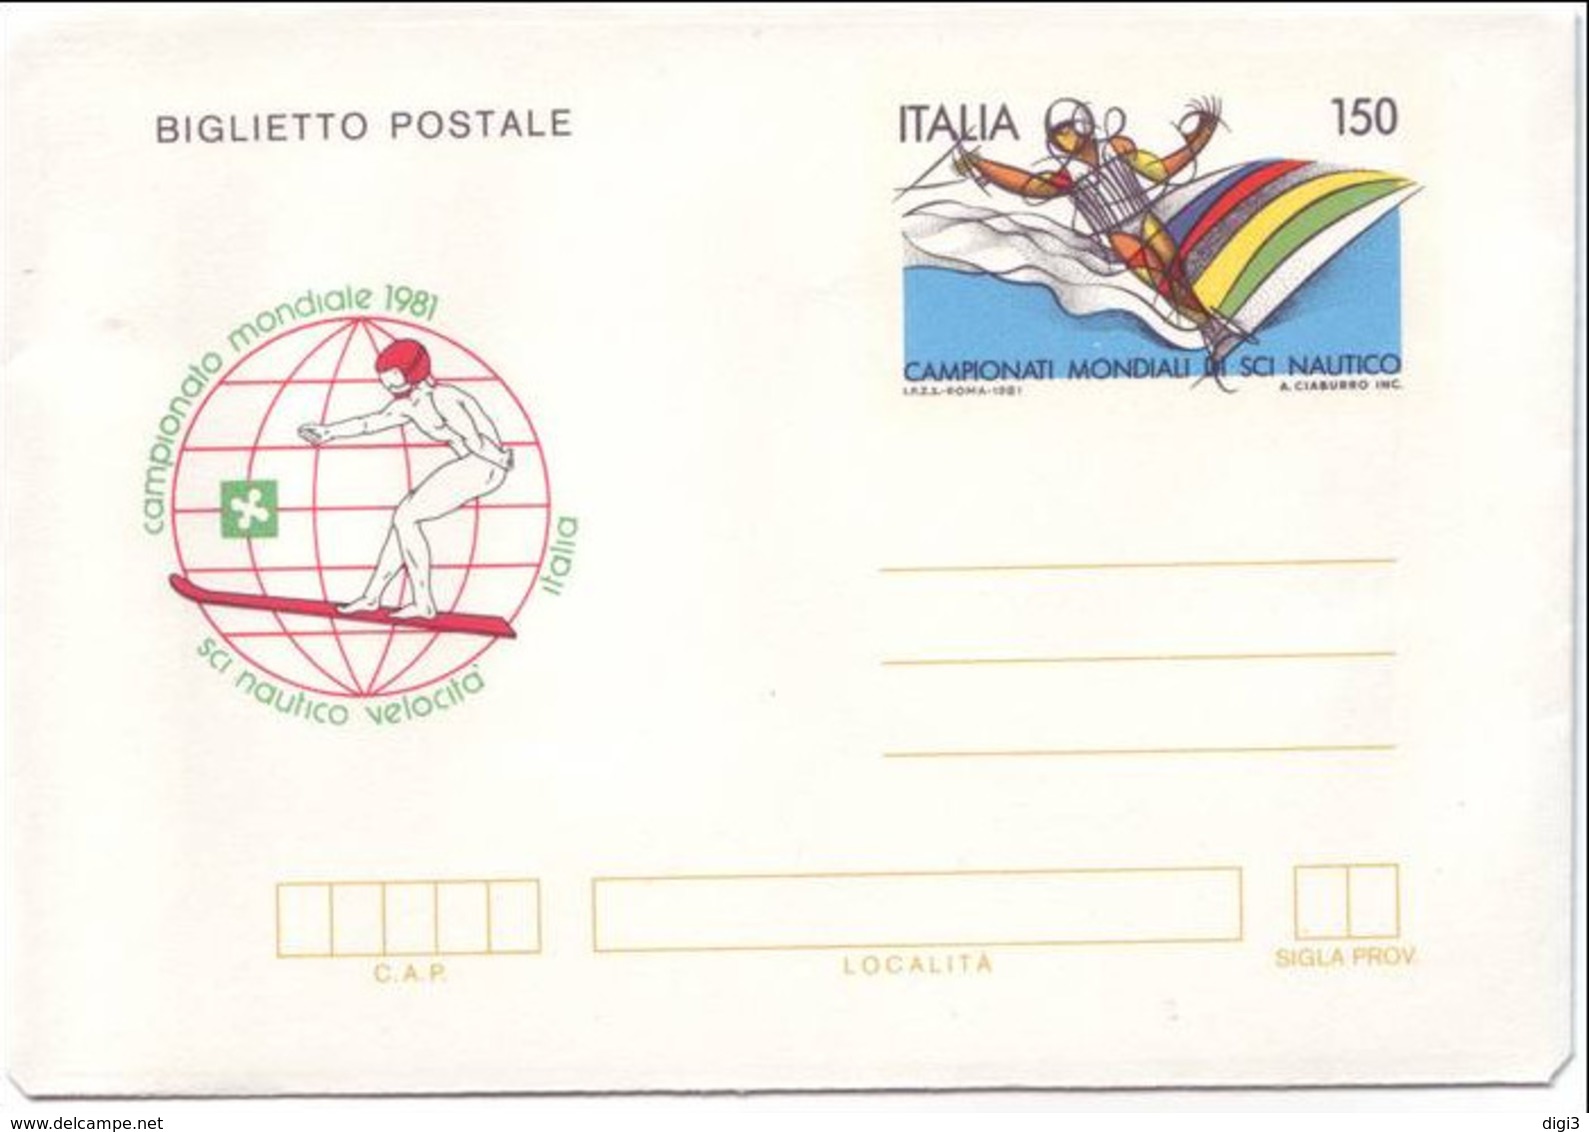 Italia, 1981, Biglietto Postale, Campionati Di Sci Nautico, L. 150, Nuovo - Interi Postali